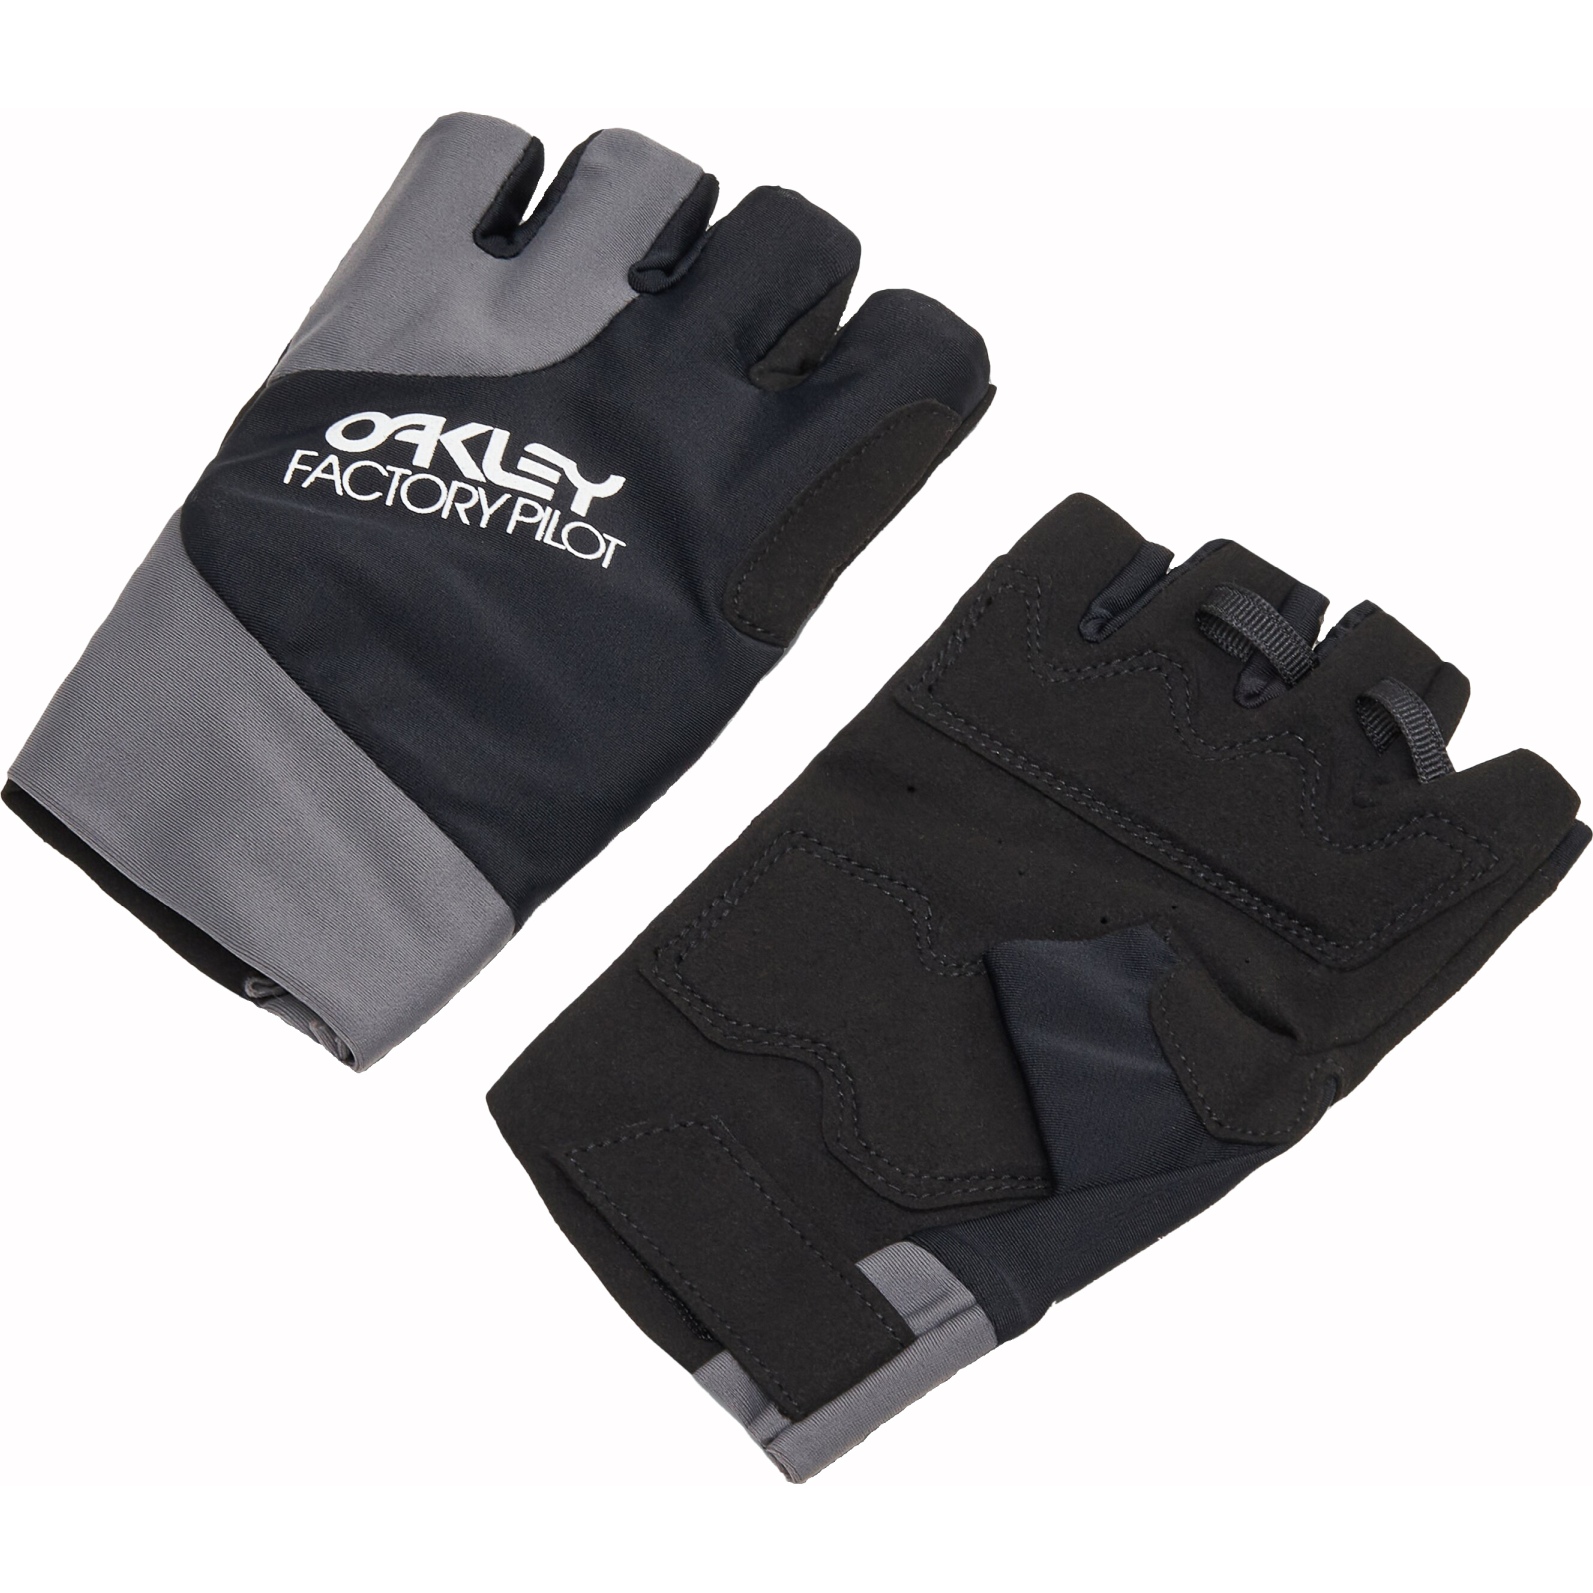 Produktbild von Oakley Factory Pilot MTB Kurzfinger-Handschuhe Damen - Blackout